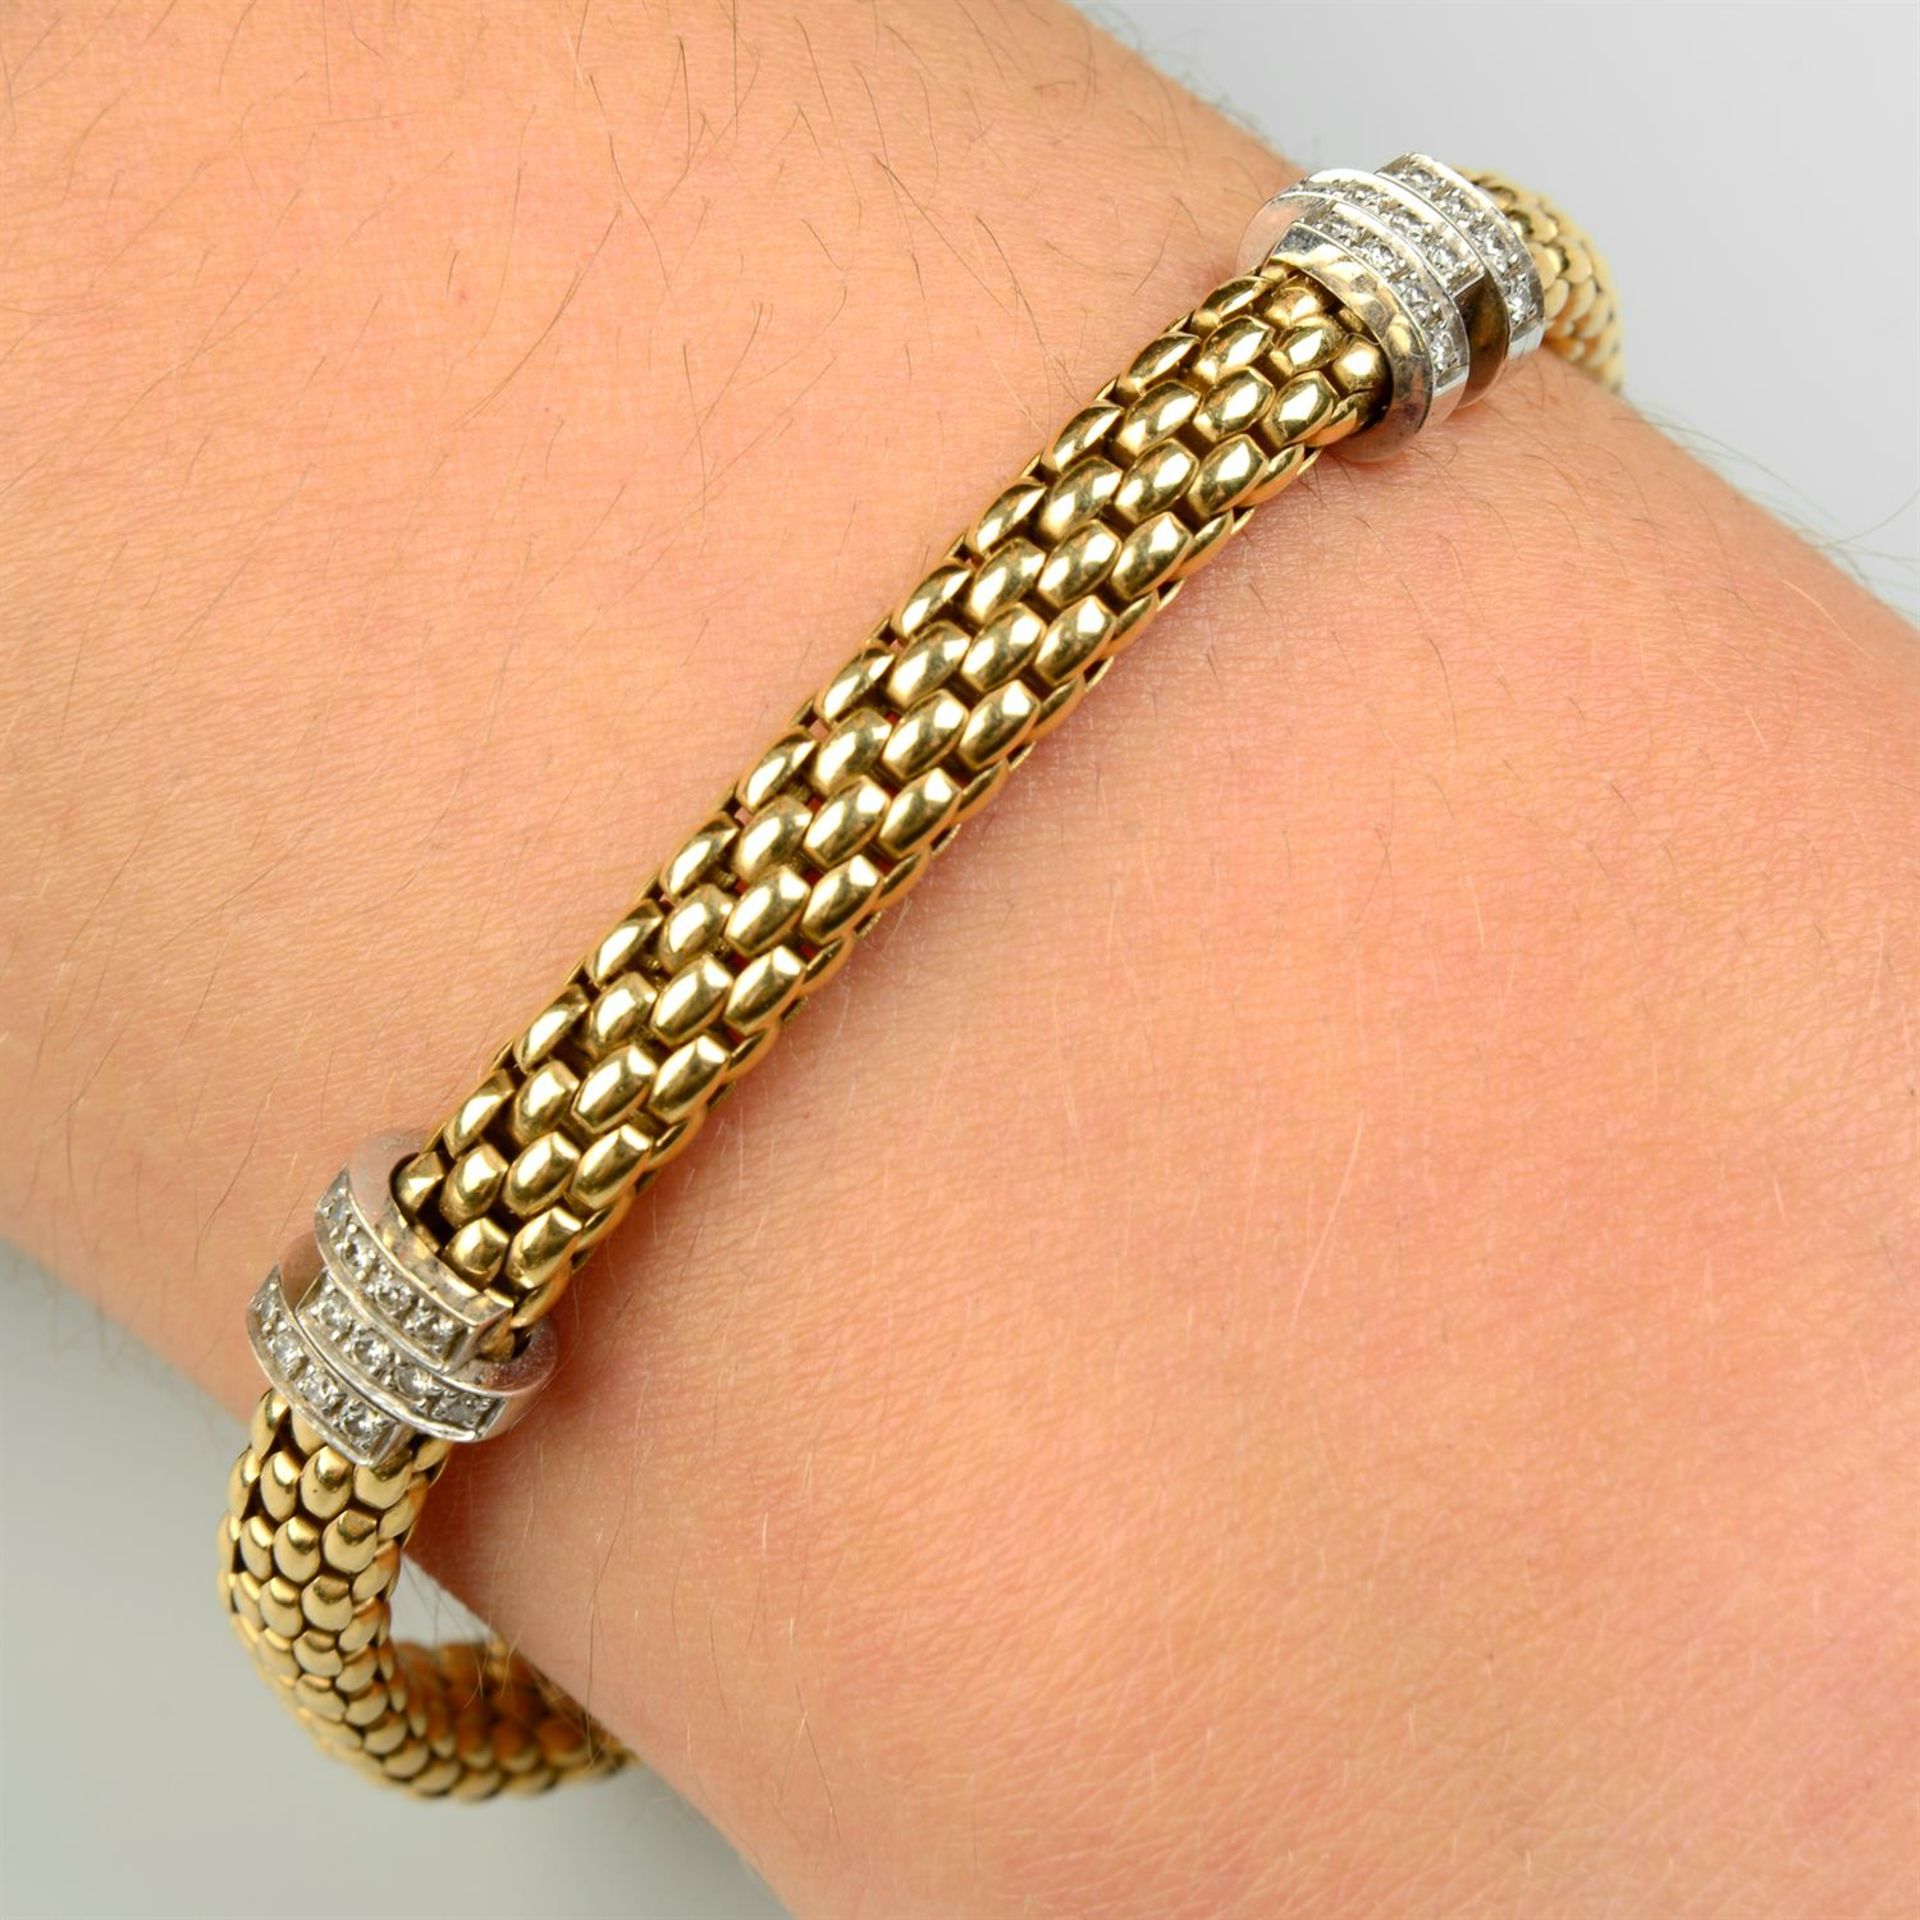 An 18ct gold diamond 'Masai' bracelet, by Fope.